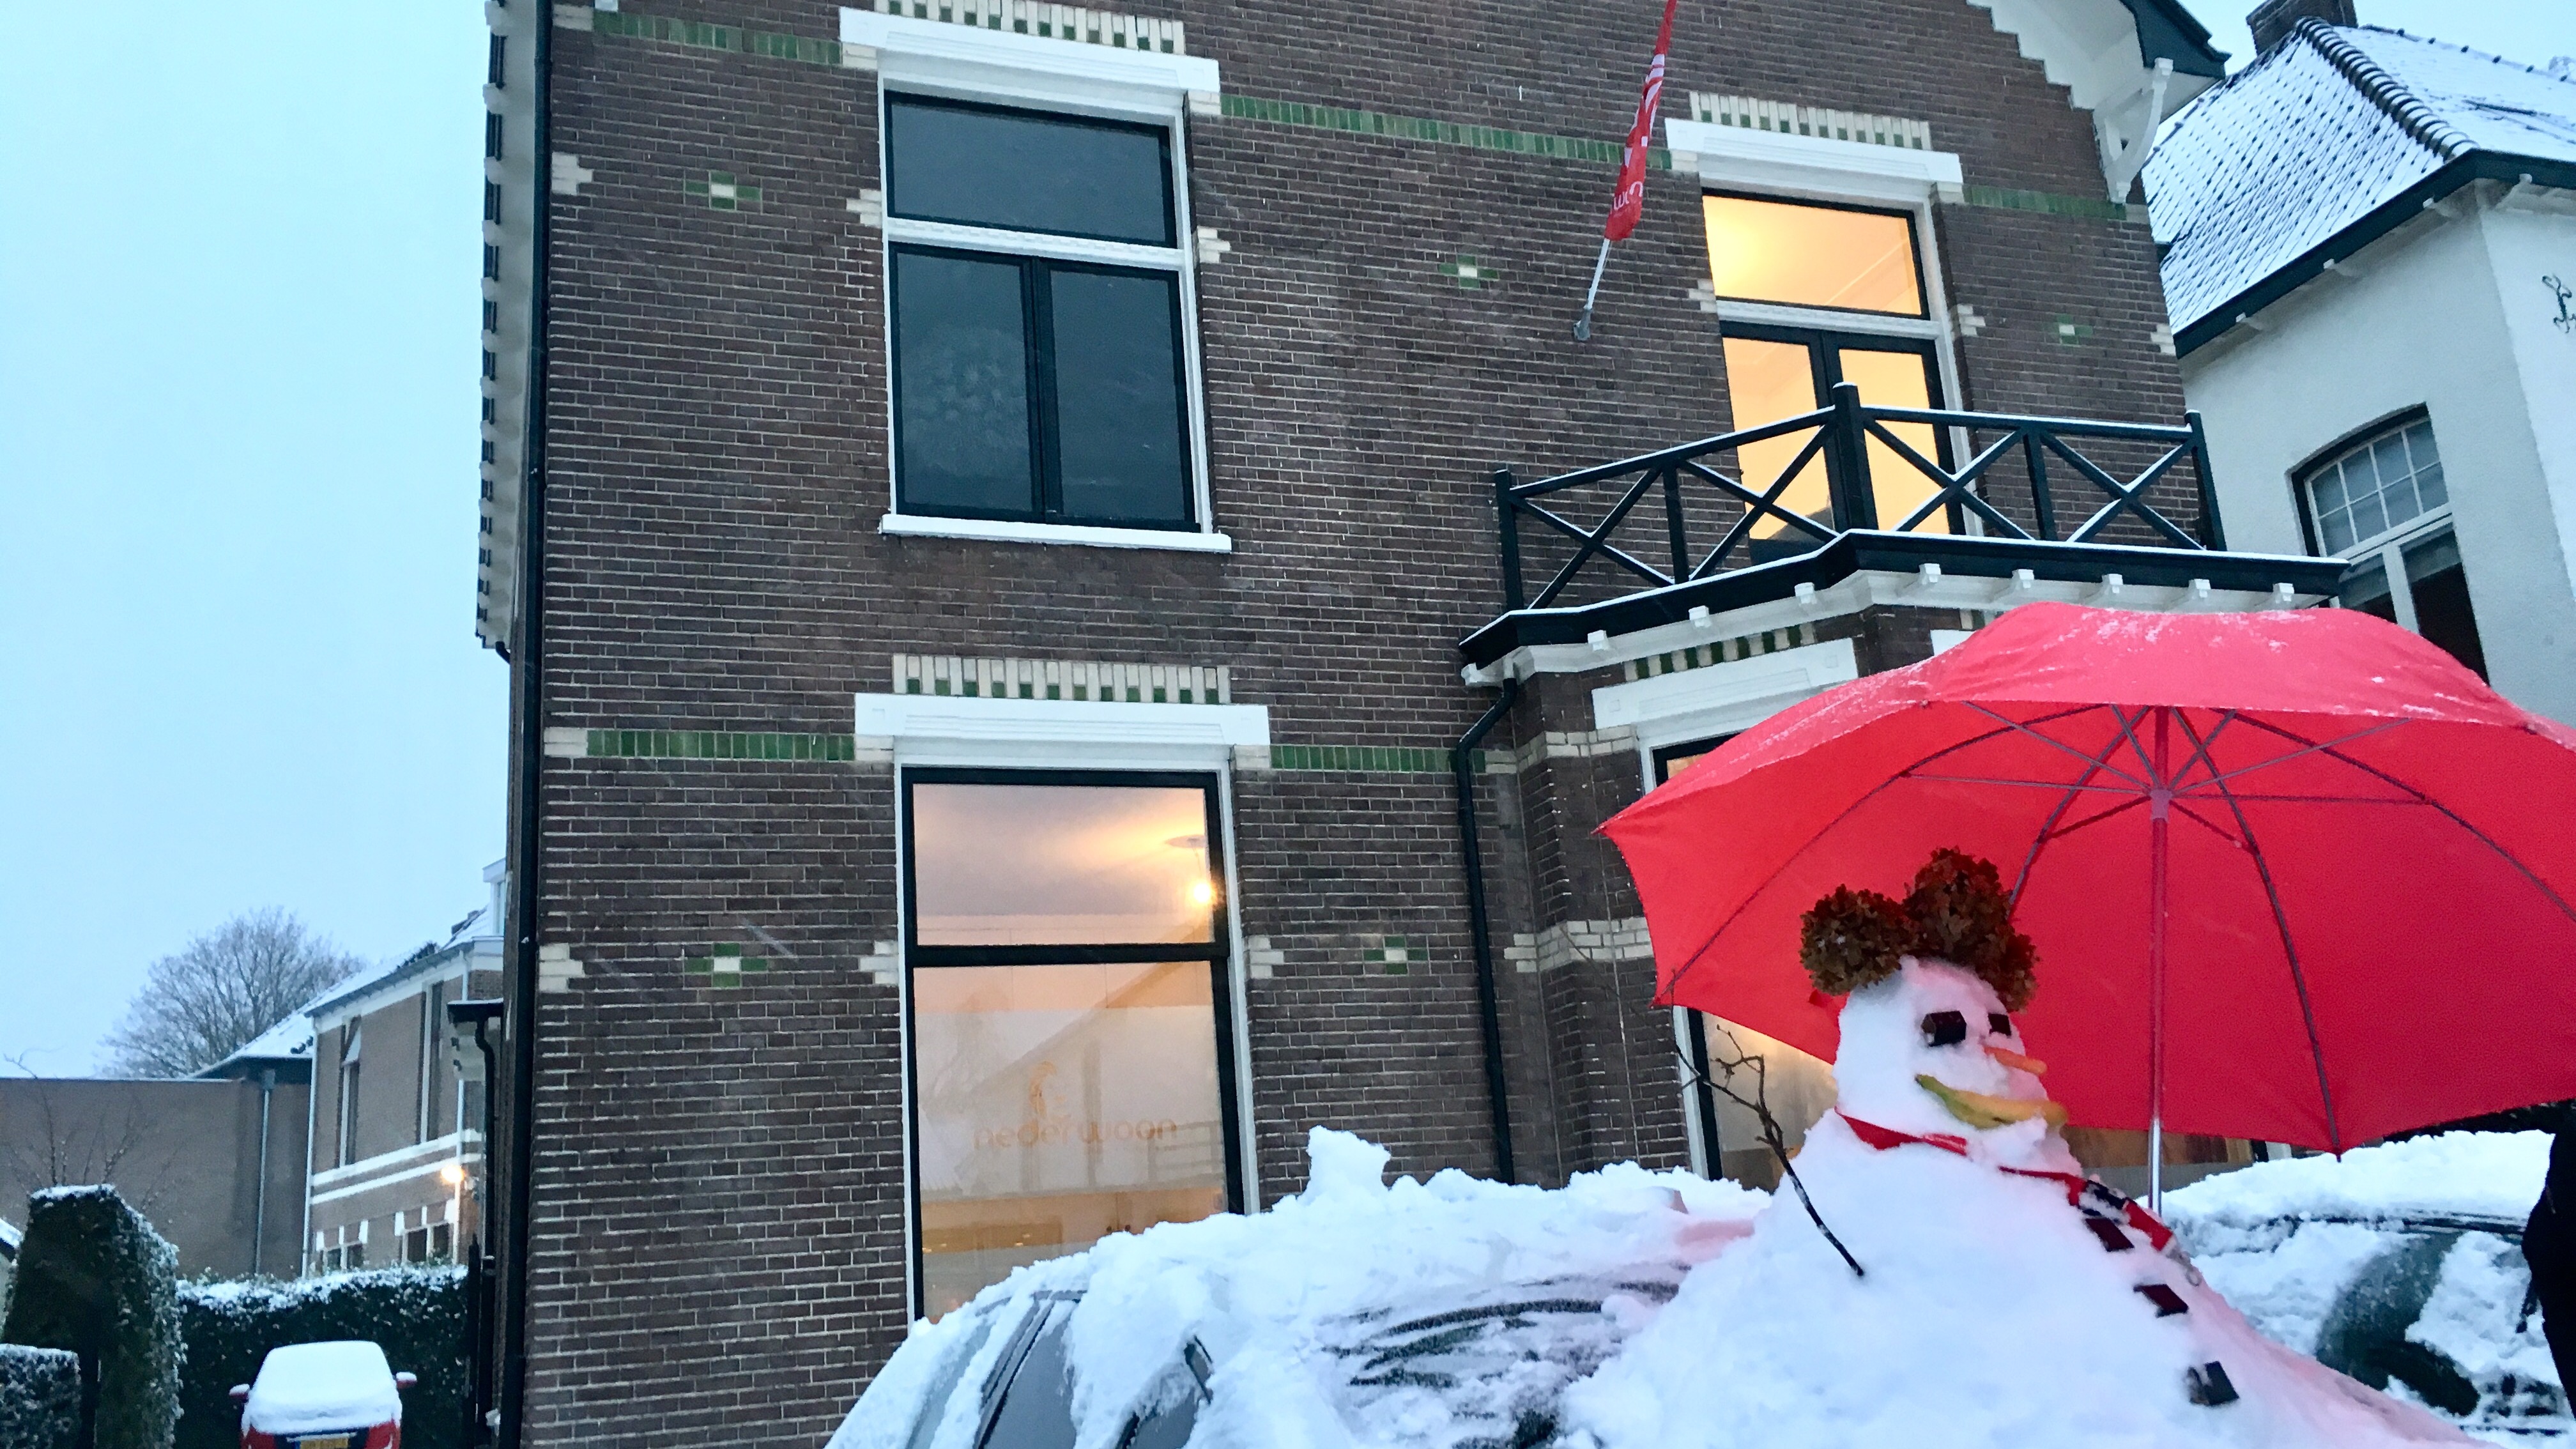 NederWoon_Apeldoorn_Hoofdkantoor_sneeuw_winter